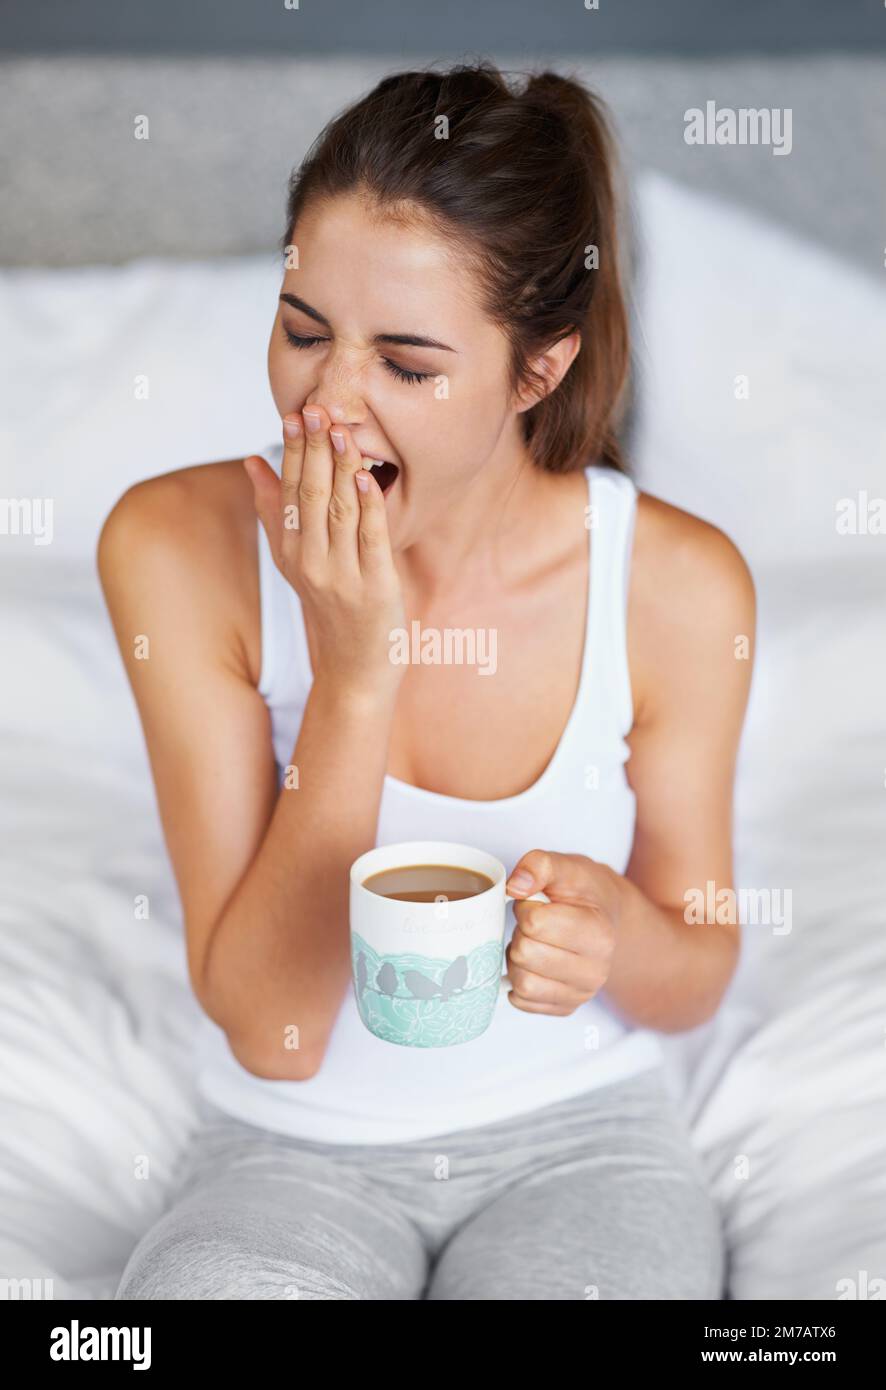 Immer noch so schläfrig... Eine junge Frau gähnt, während sie mit einer Tasse Kaffee im Bett sitzt. Stockfoto